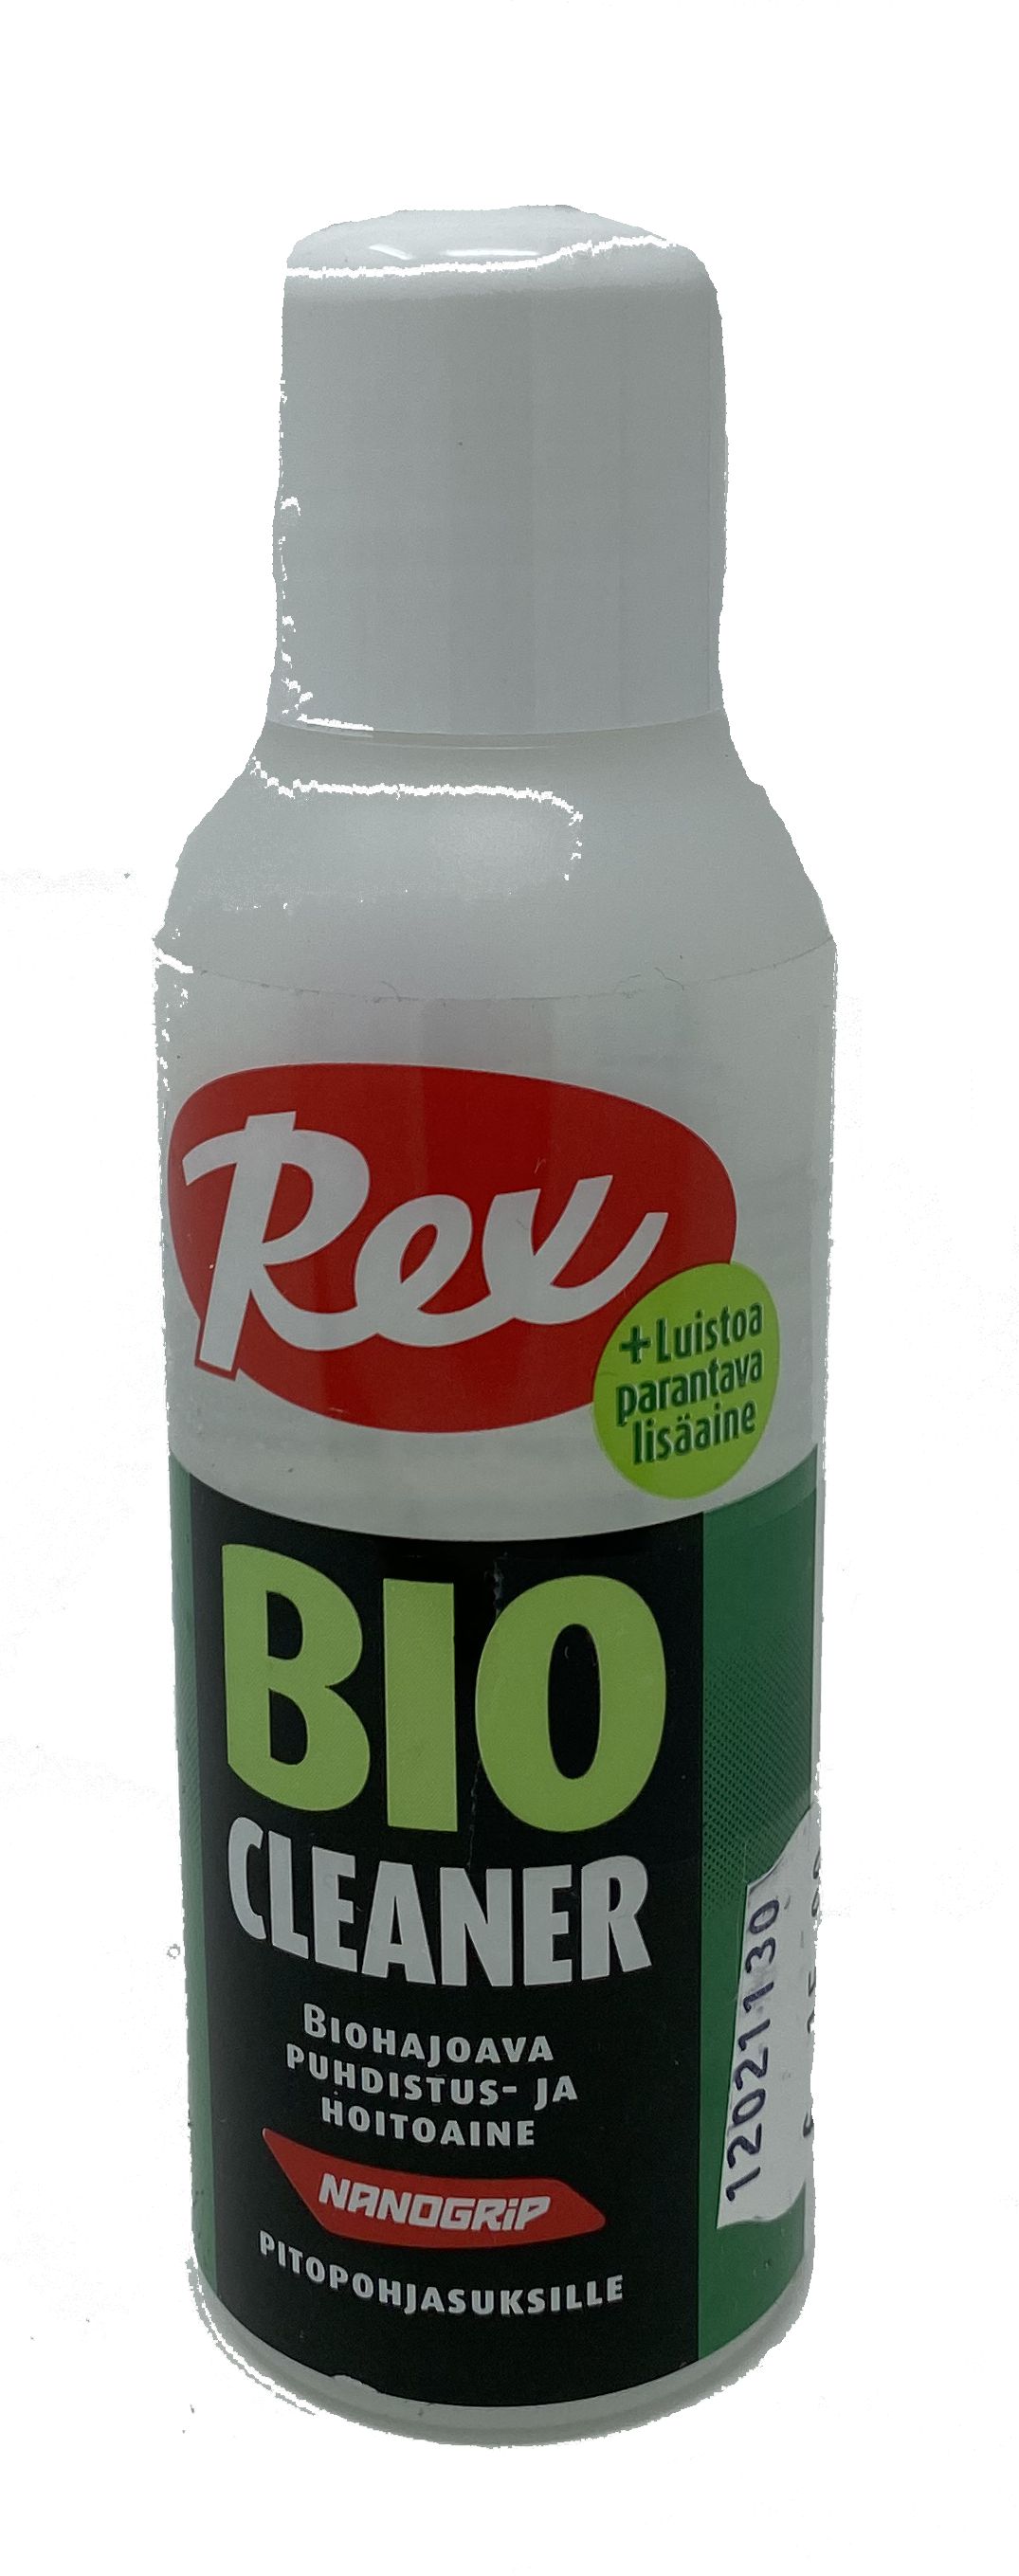 Rex Bio Cleaner